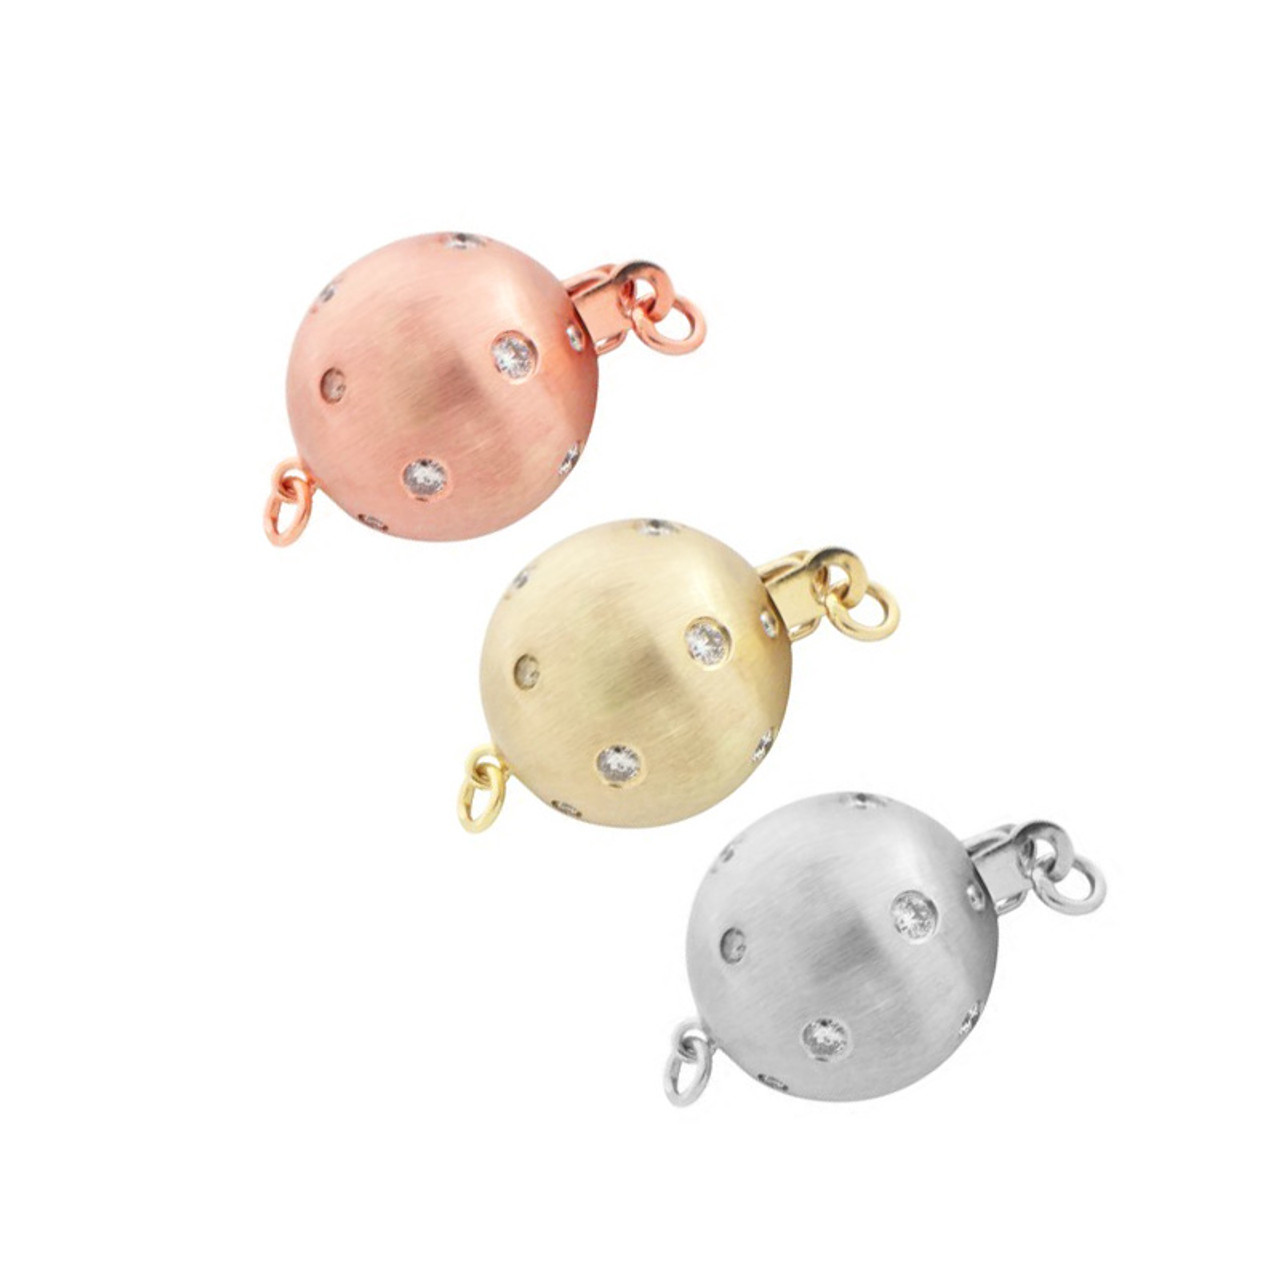 14K Gold Diamond Ball Clasp For Necklace / Bracelet